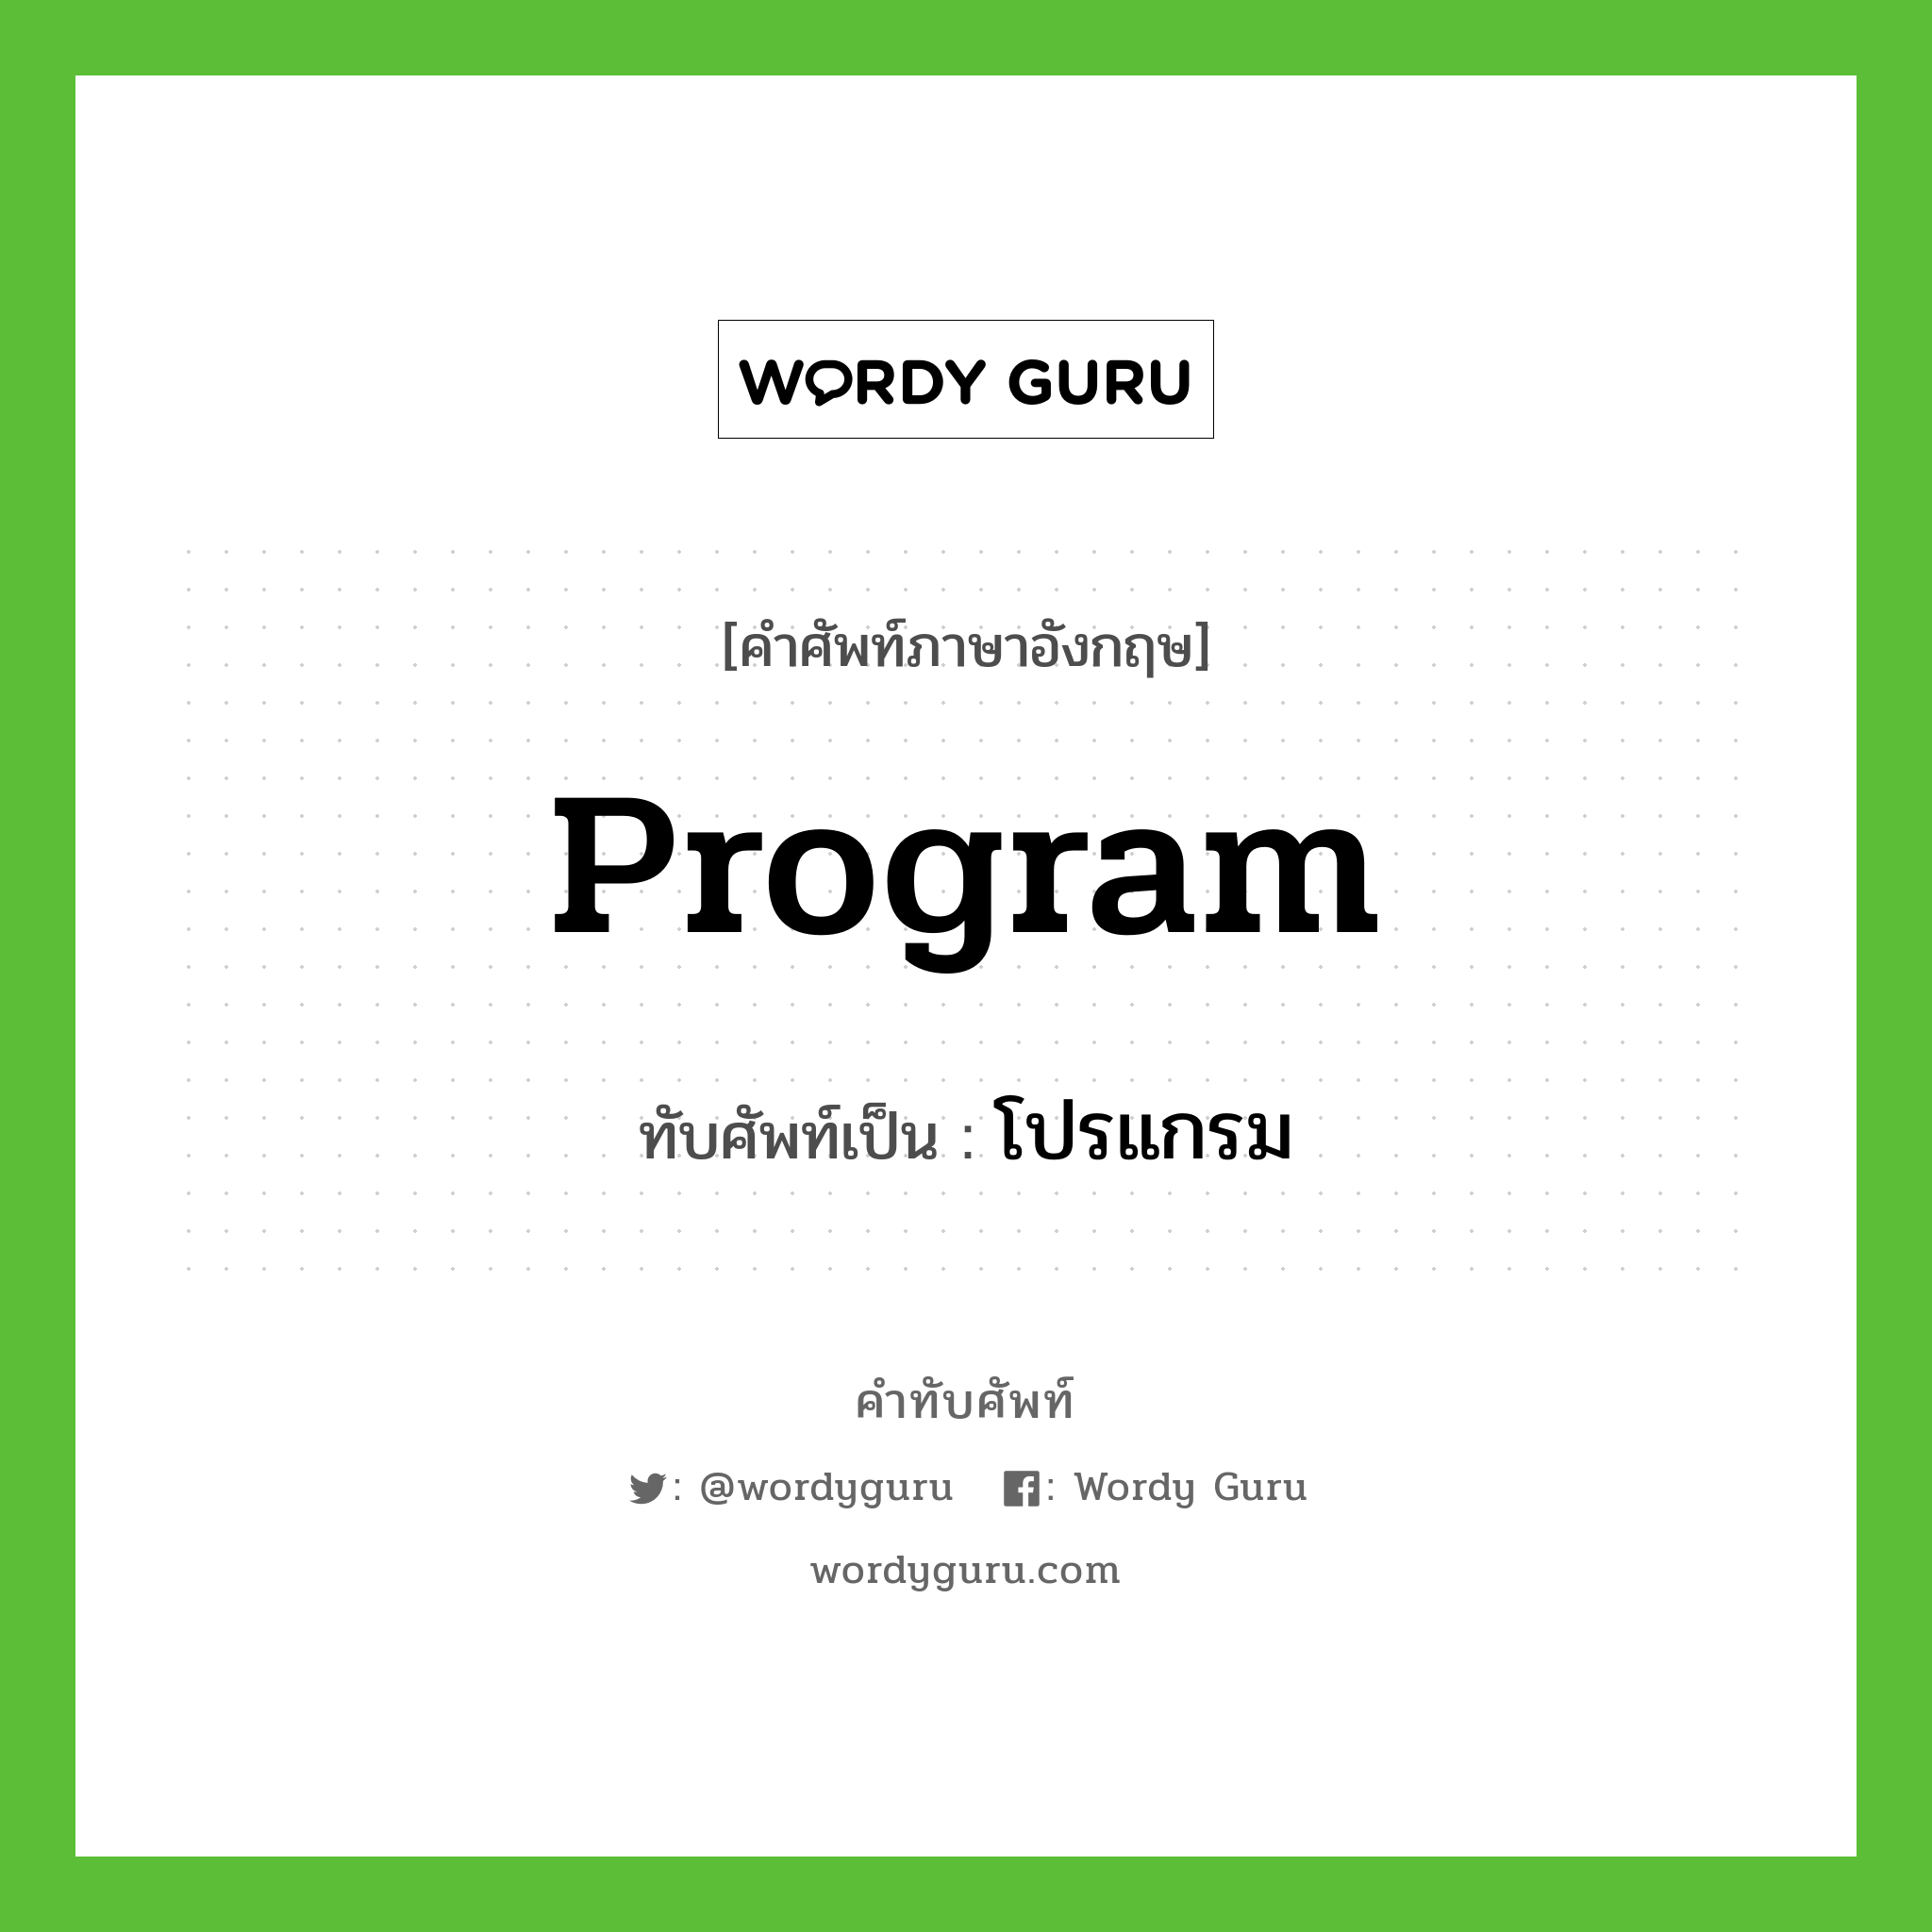 program เขียนเป็นคำไทยว่าอะไร?, คำศัพท์ภาษาอังกฤษ program ทับศัพท์เป็น โปรแกรม